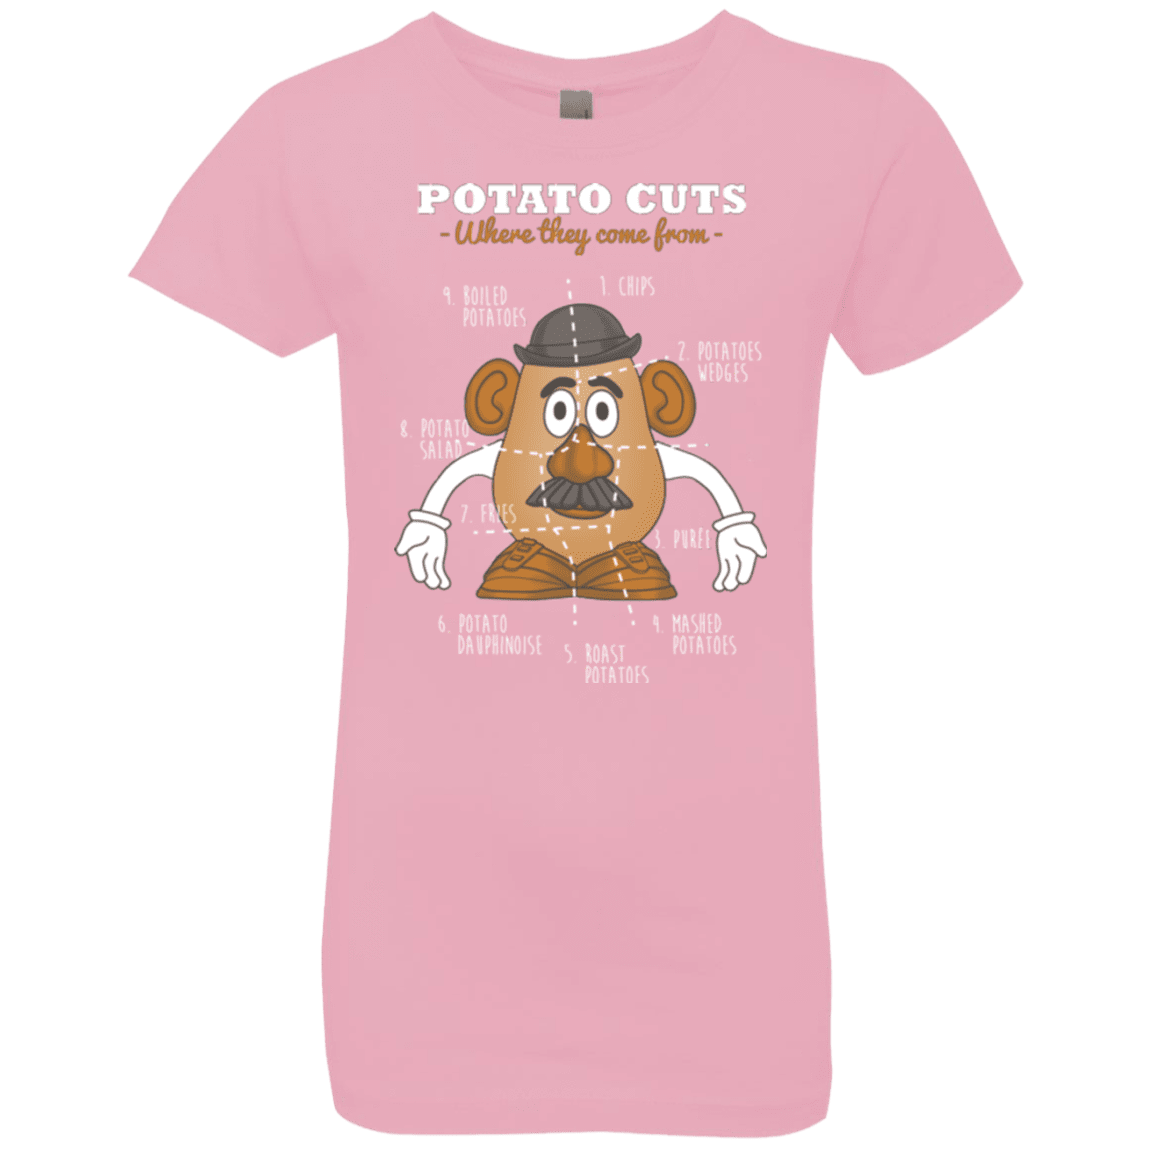 T-Shirts Light Pink / YXS A Potato Anatomy Girls Premium T-Shirt